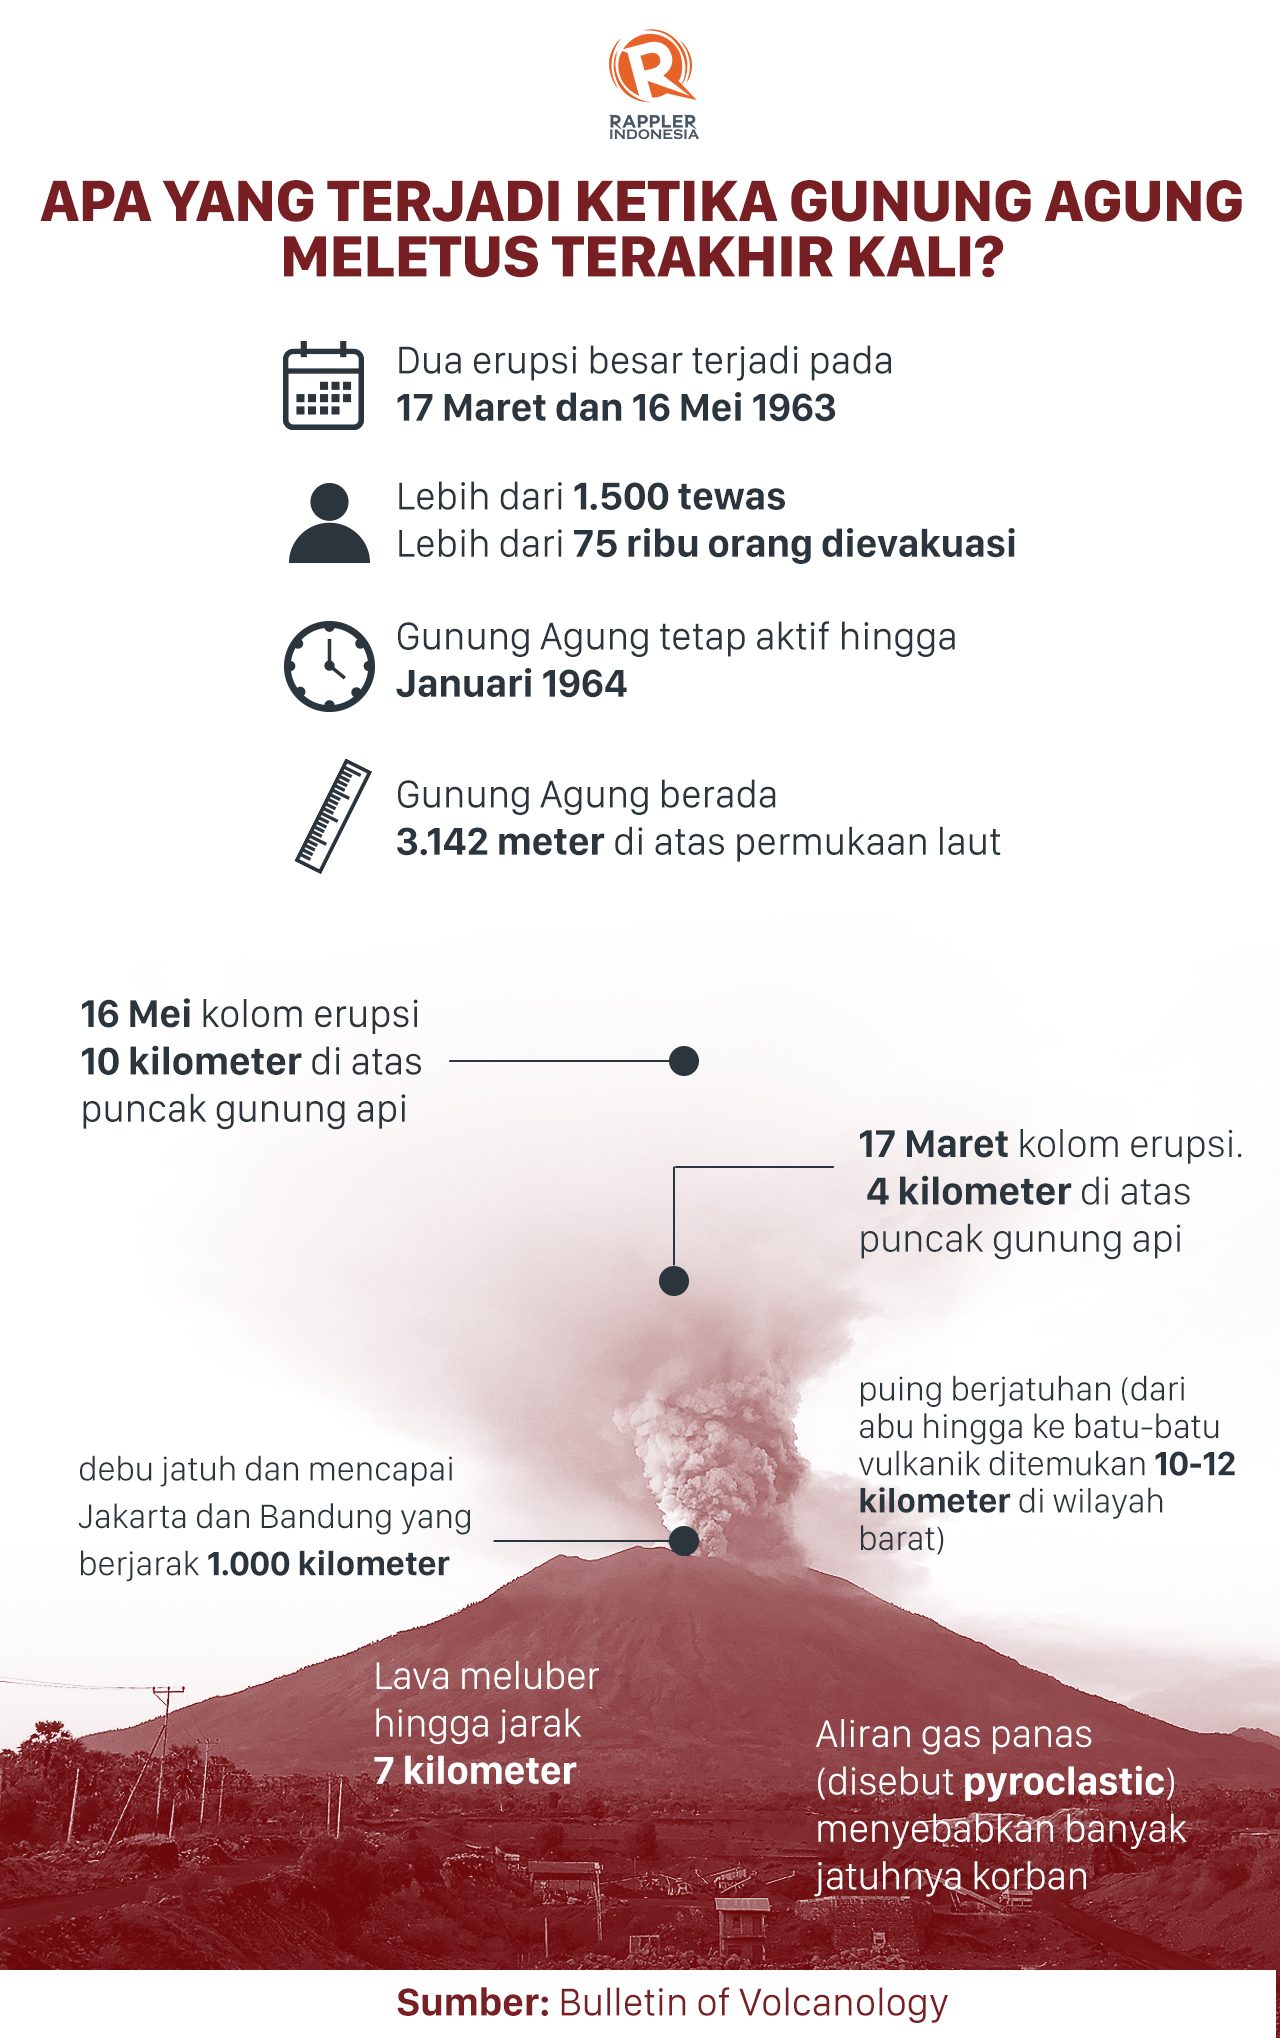 Letusan Gunung Agung tahun 1963 dalam kenangan masyarakat Bali